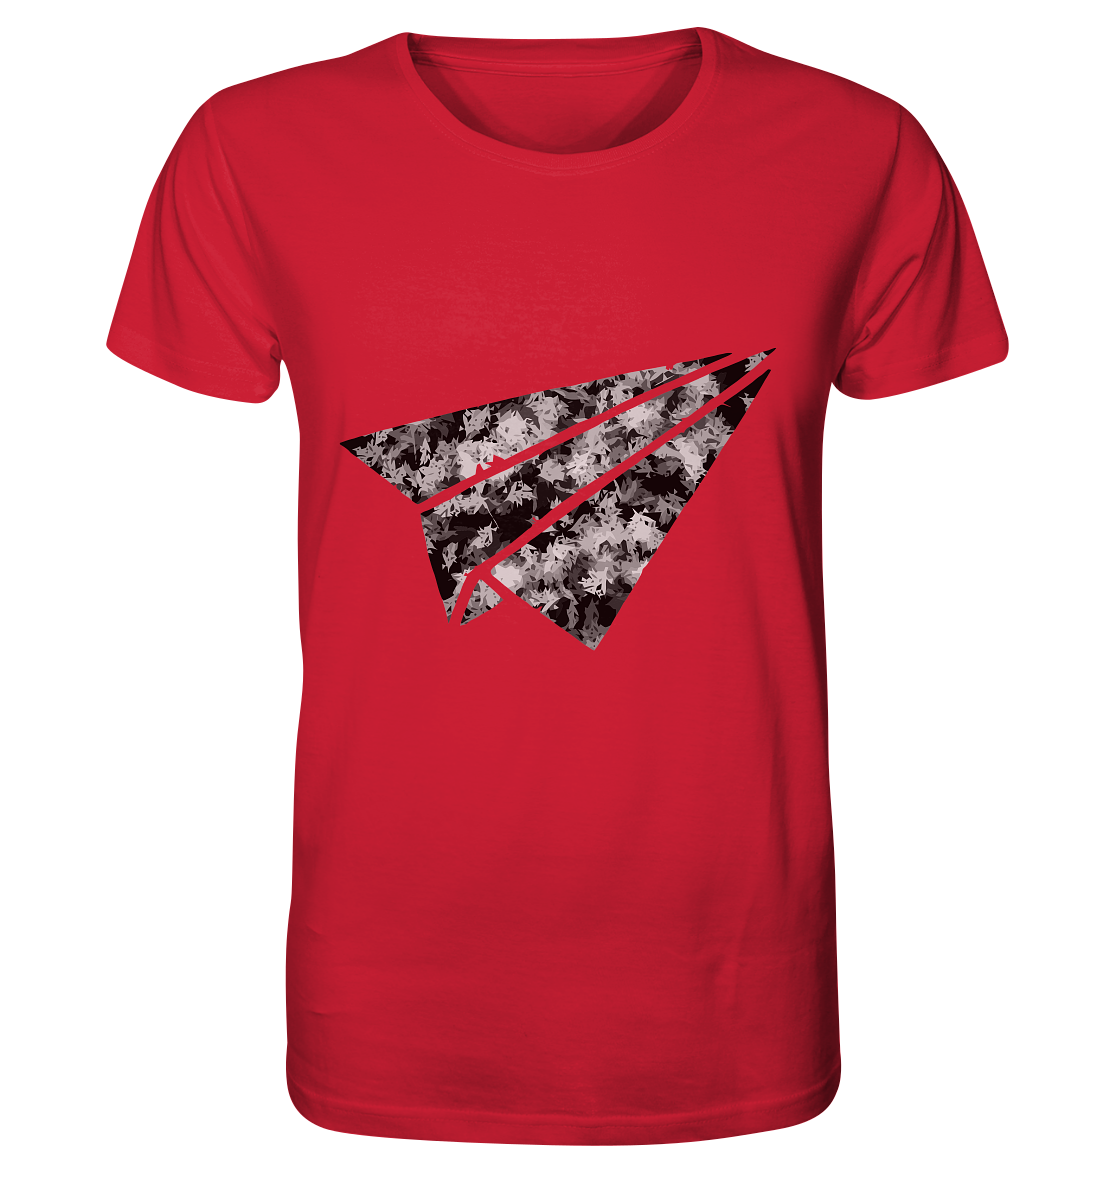 Flieger Shirt - Organic Shirt